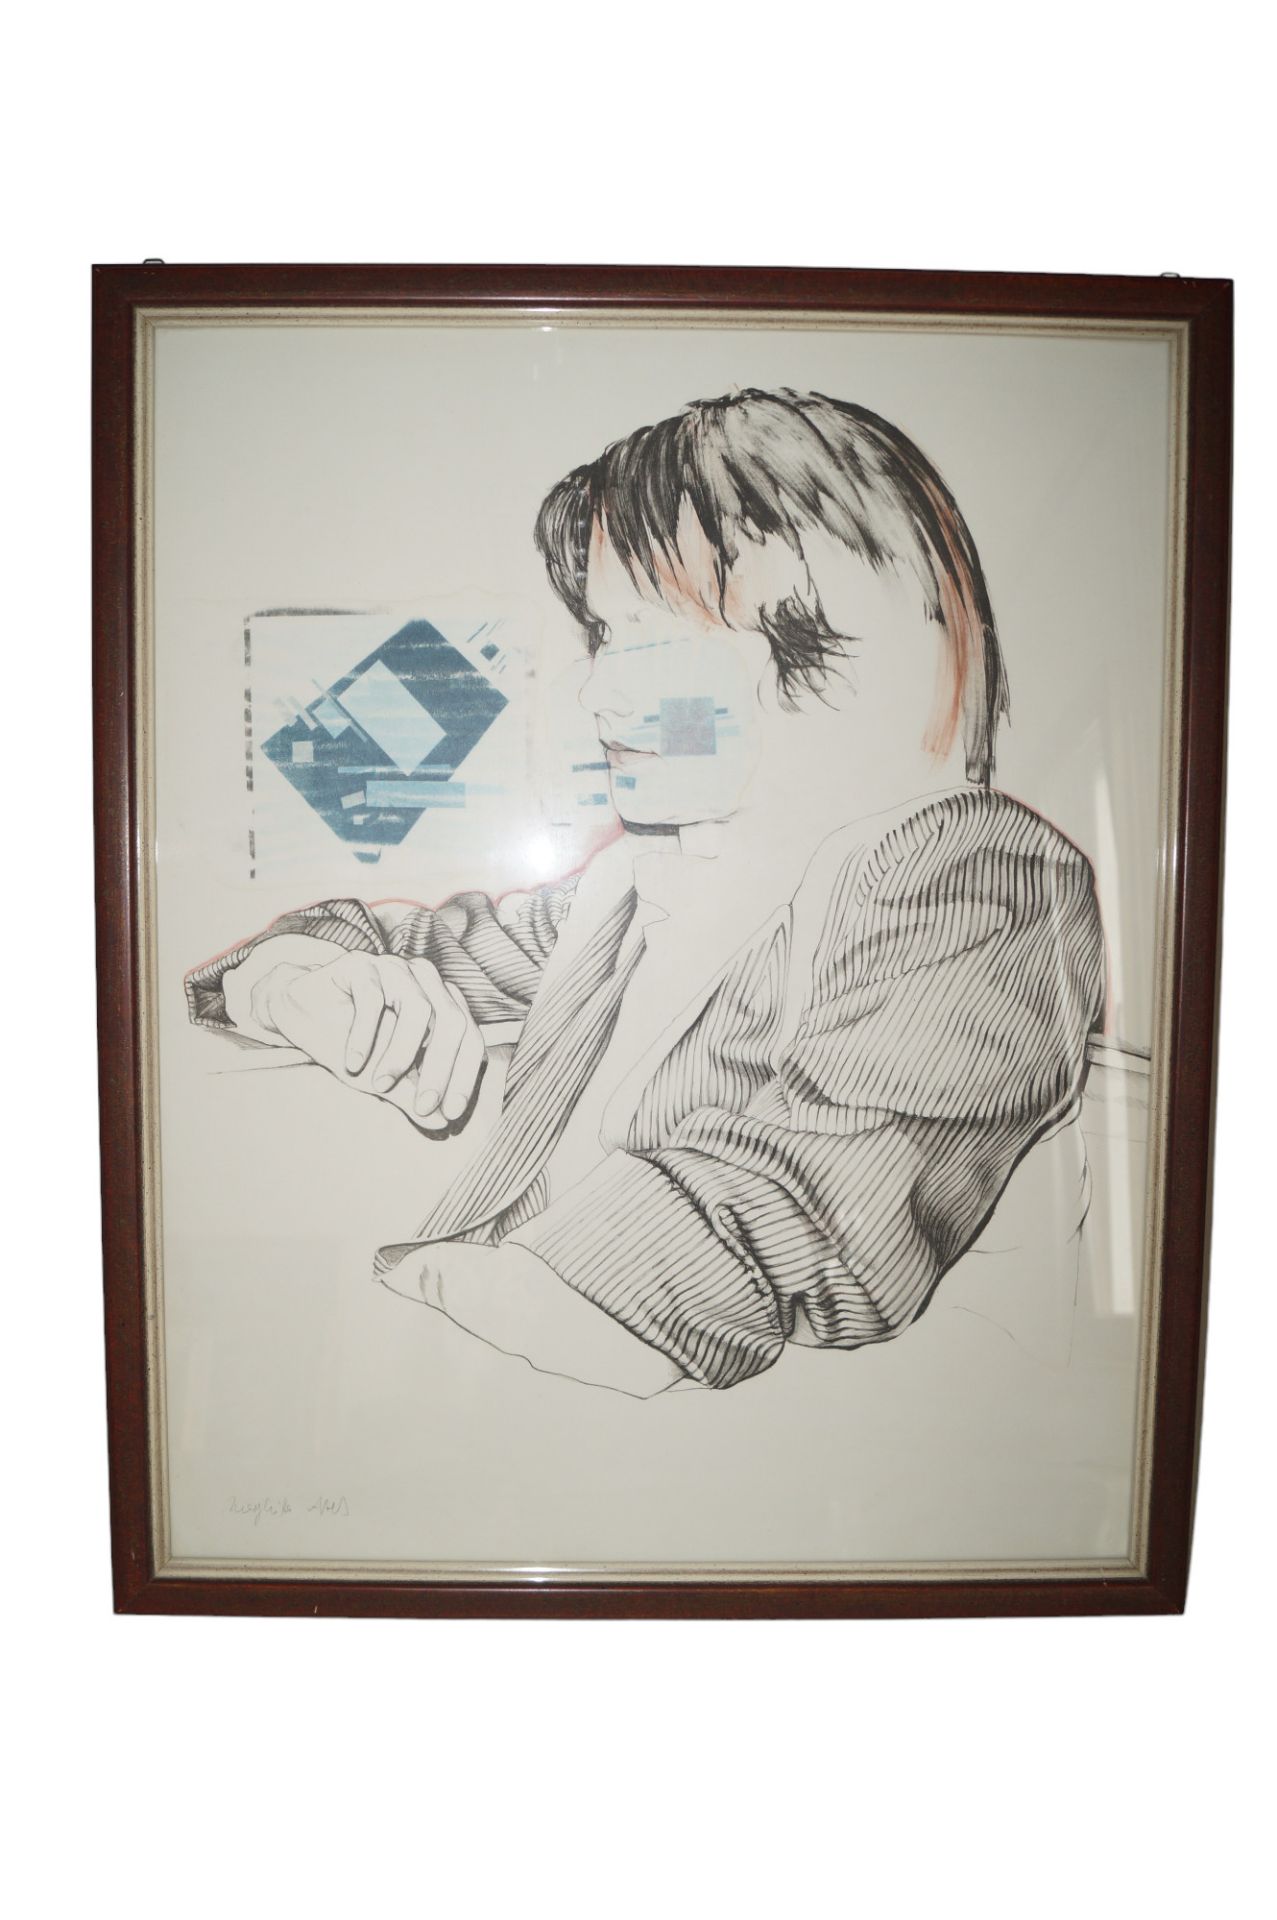 Seltene Lithographie von Margitta Abels; Darstellung einer wohl auf die Uhr sehenden Person mit Pro